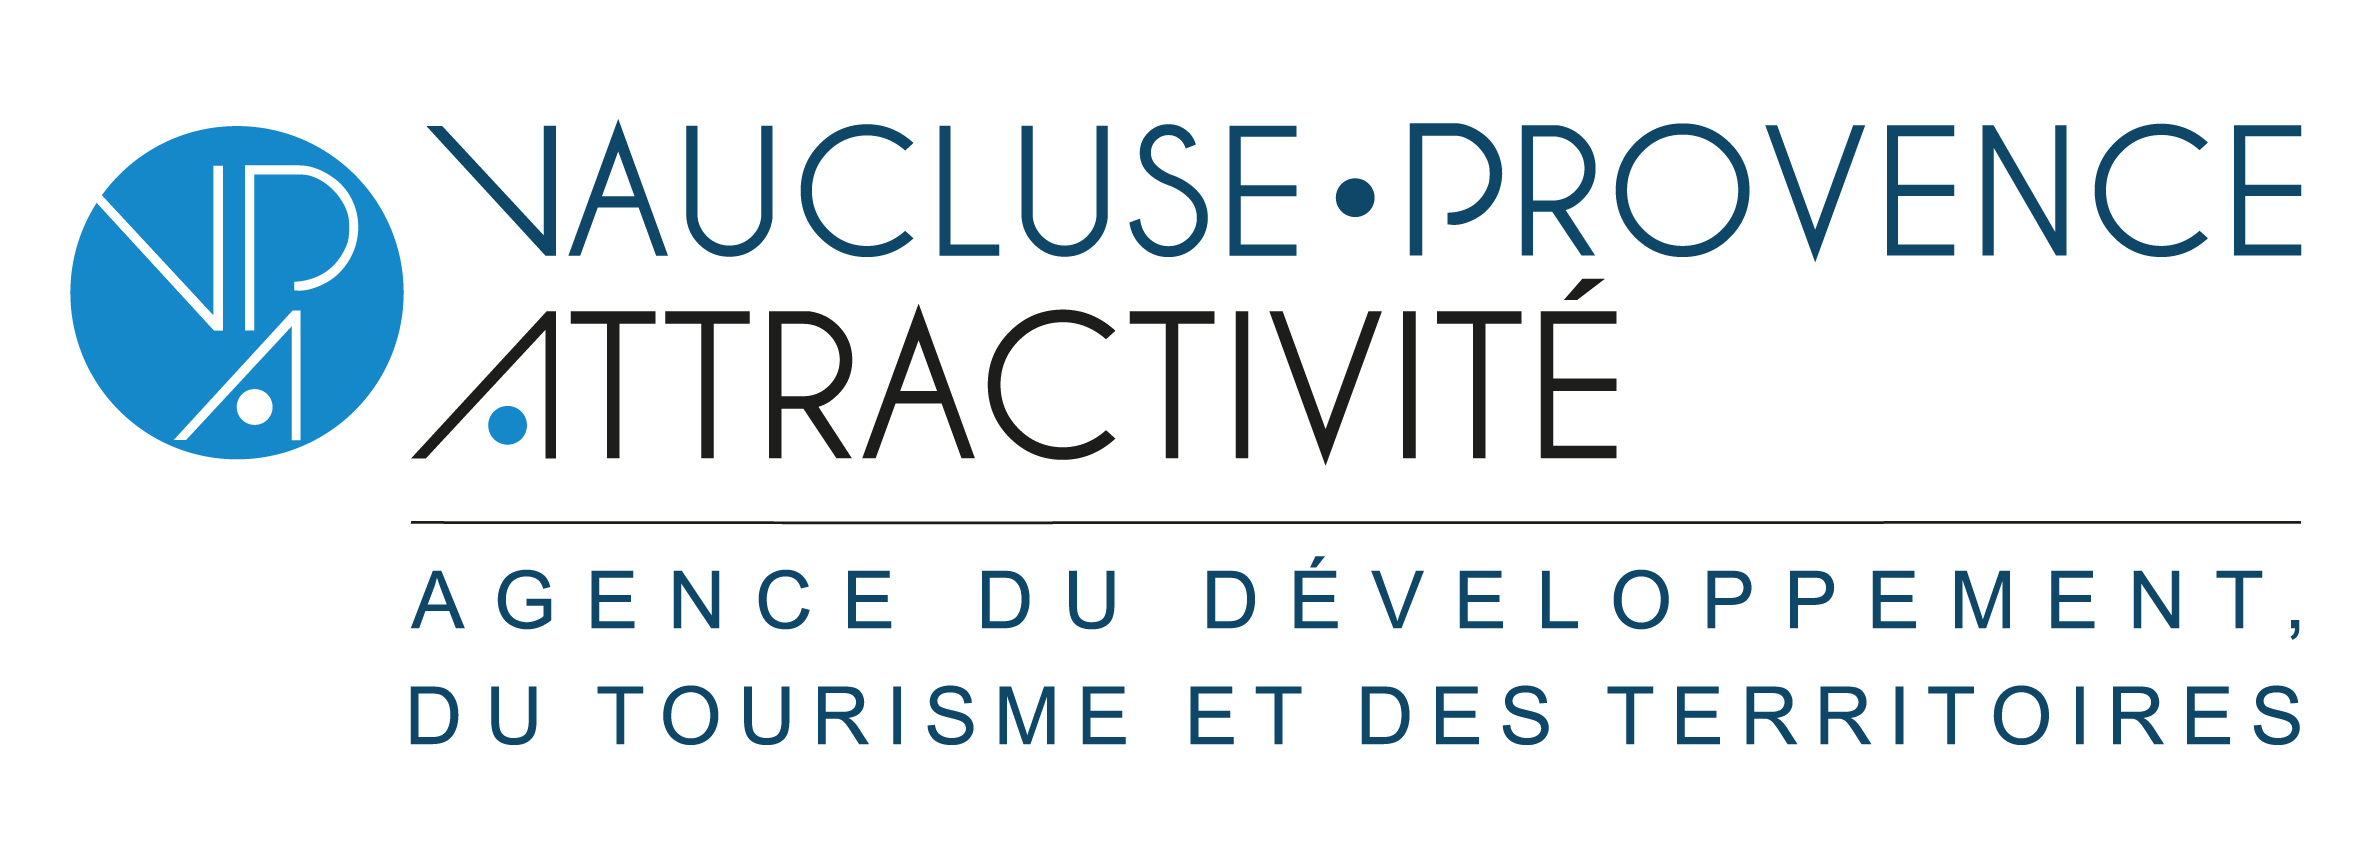 DSP ou gestion (marché public de service) - Vaucluse Provence Attractivité 